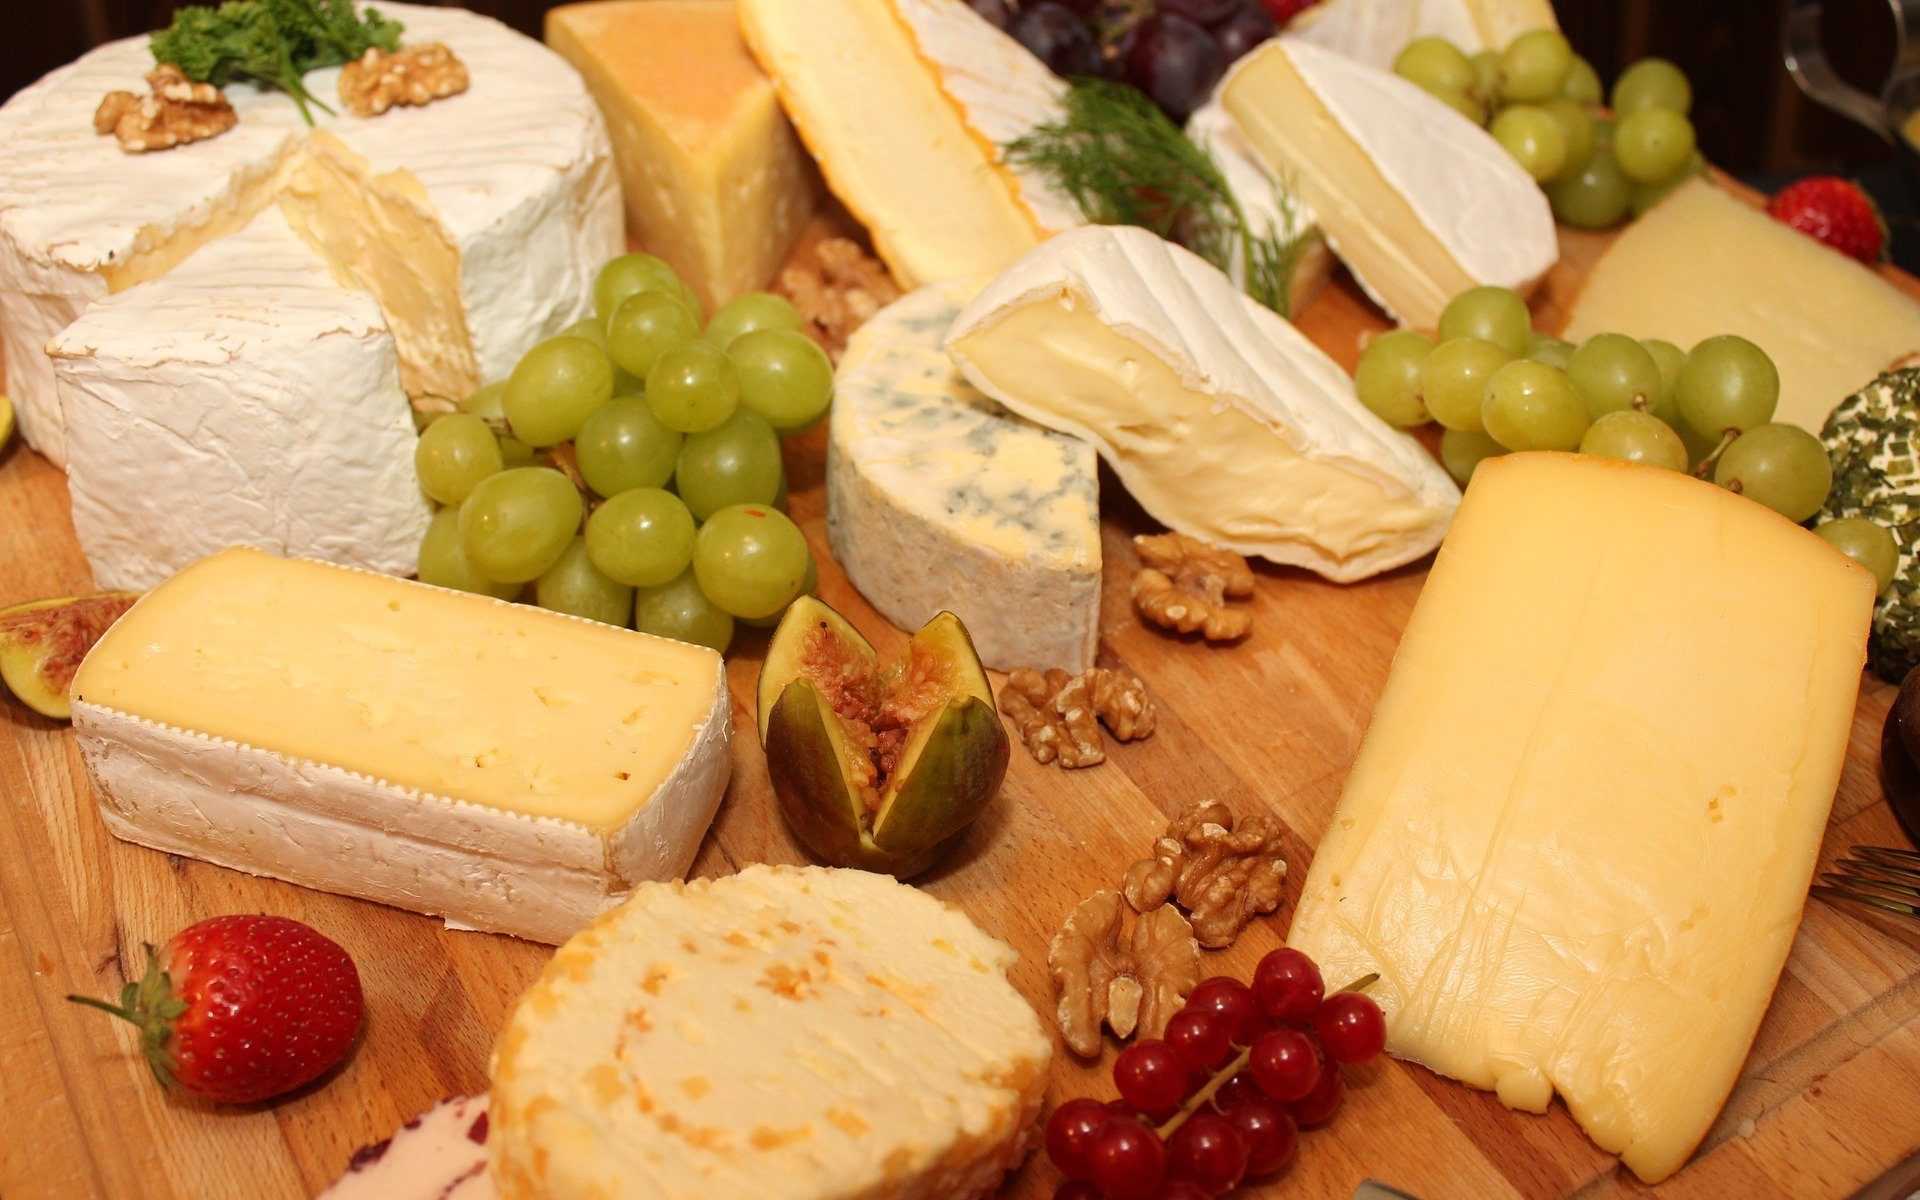 Quels sont les bienfaits du fromage végétal? - recette fromage